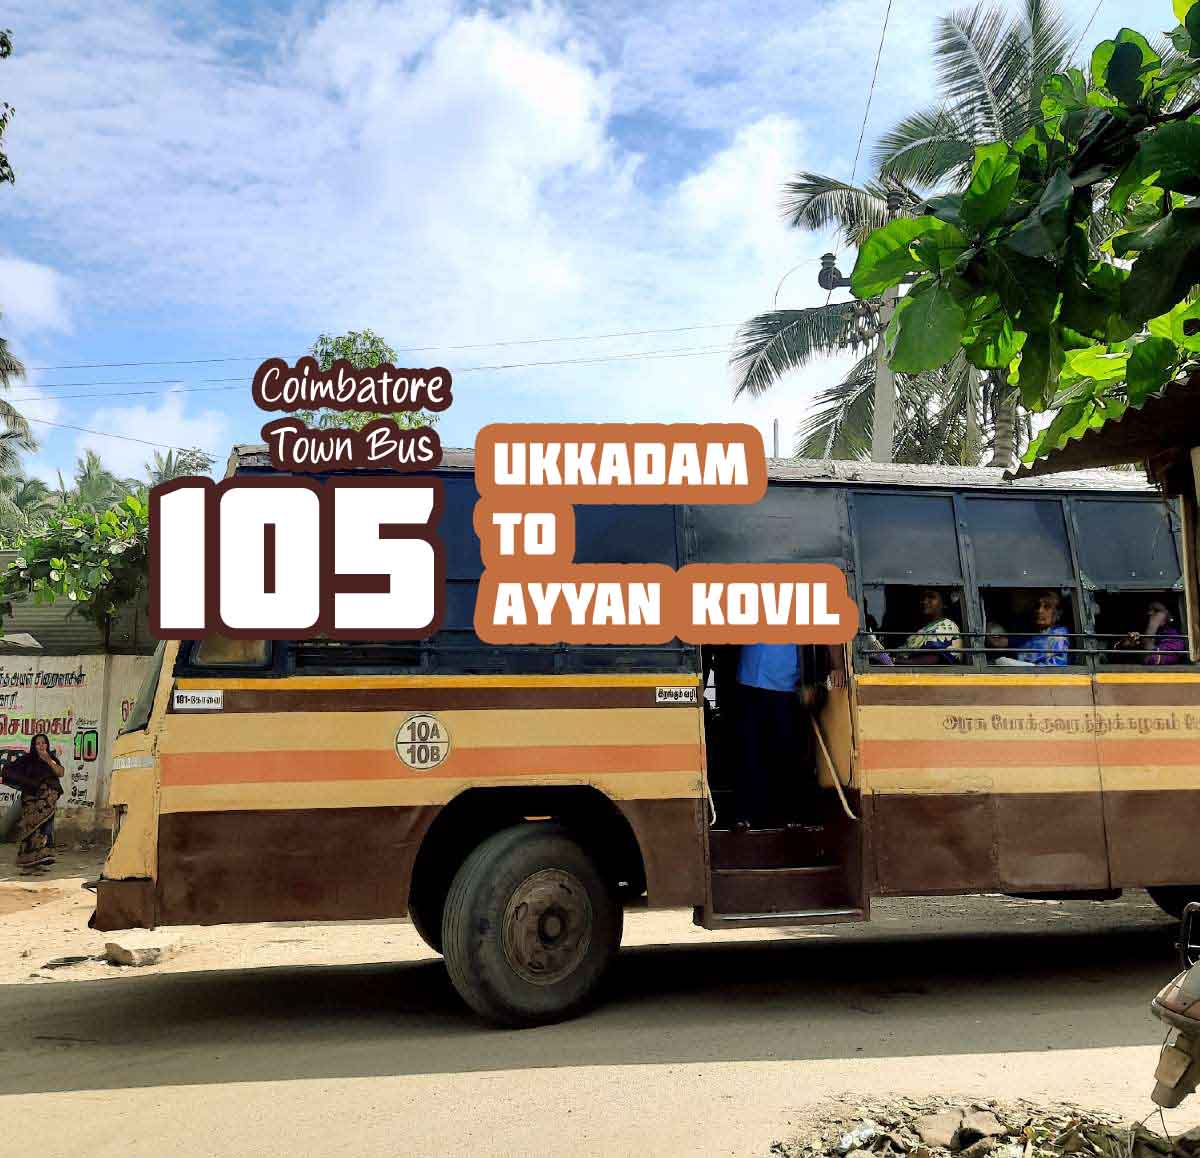 Coimbatore Town Bus Route 105 Ukkadam to Ayyan Kovil Bus Timings